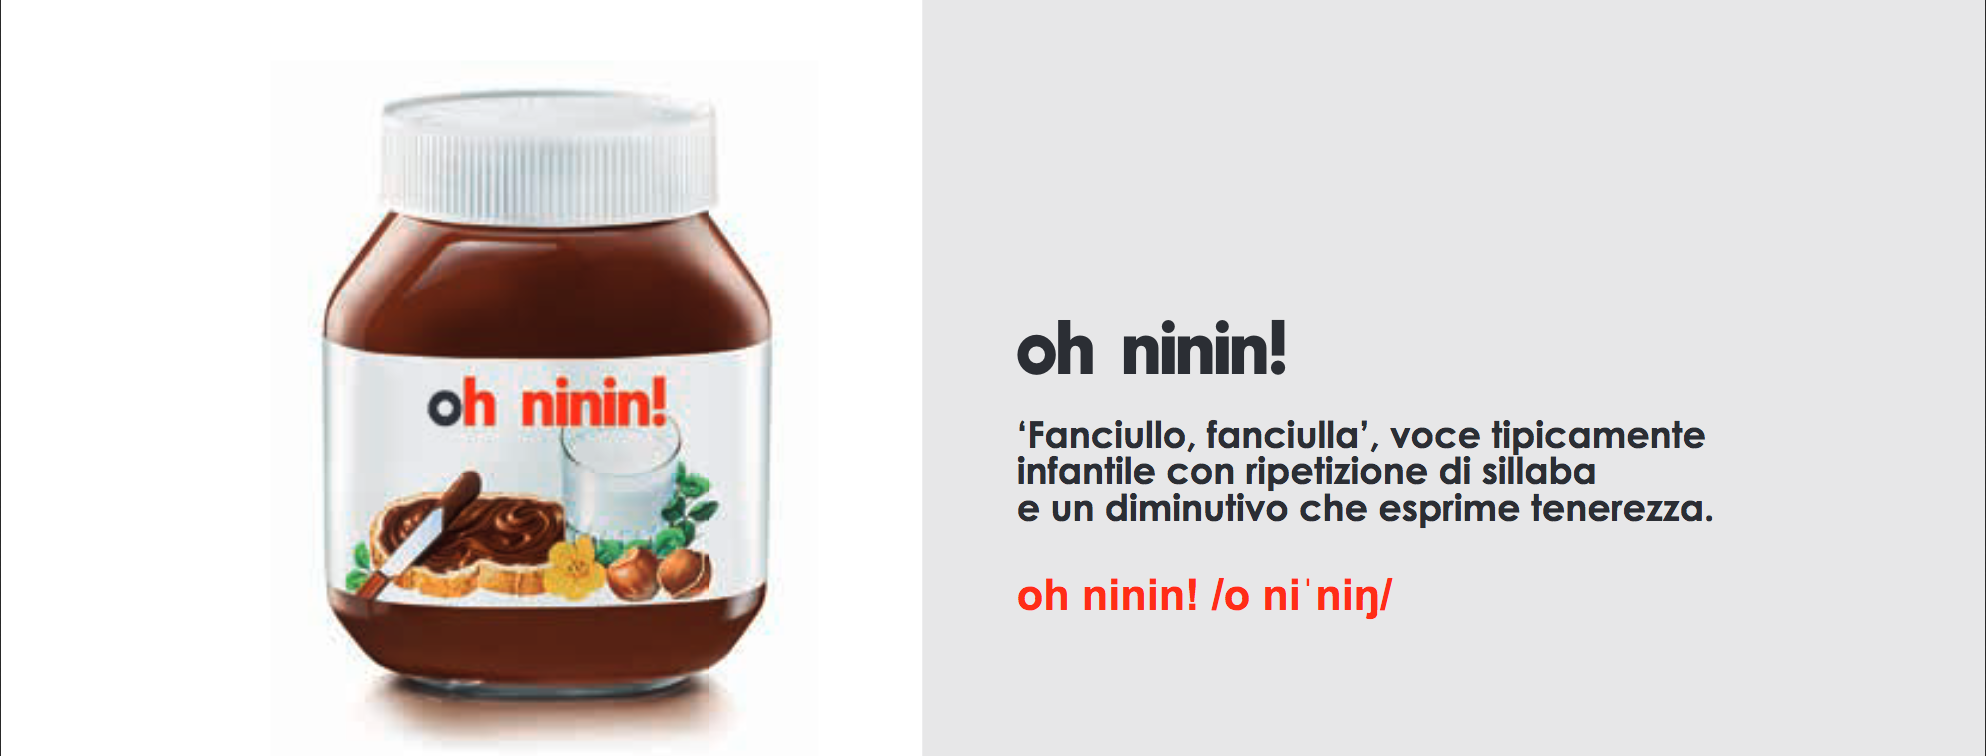 Un esempio di uso di dialetto genovese nella campagna pubblicitaria di Nutella